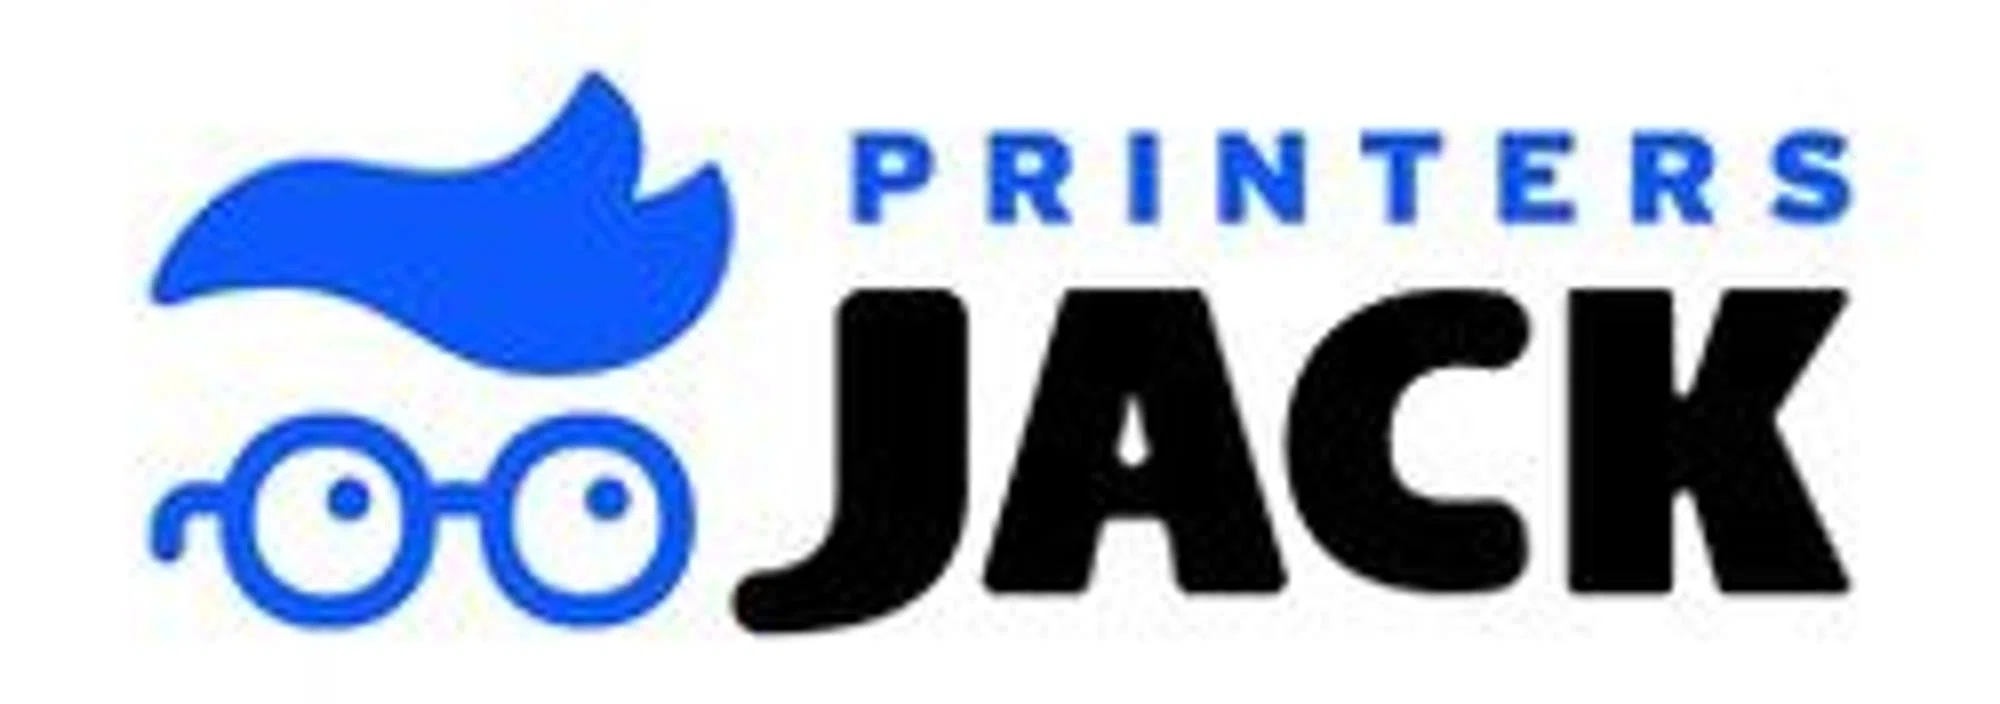 Printers Jack